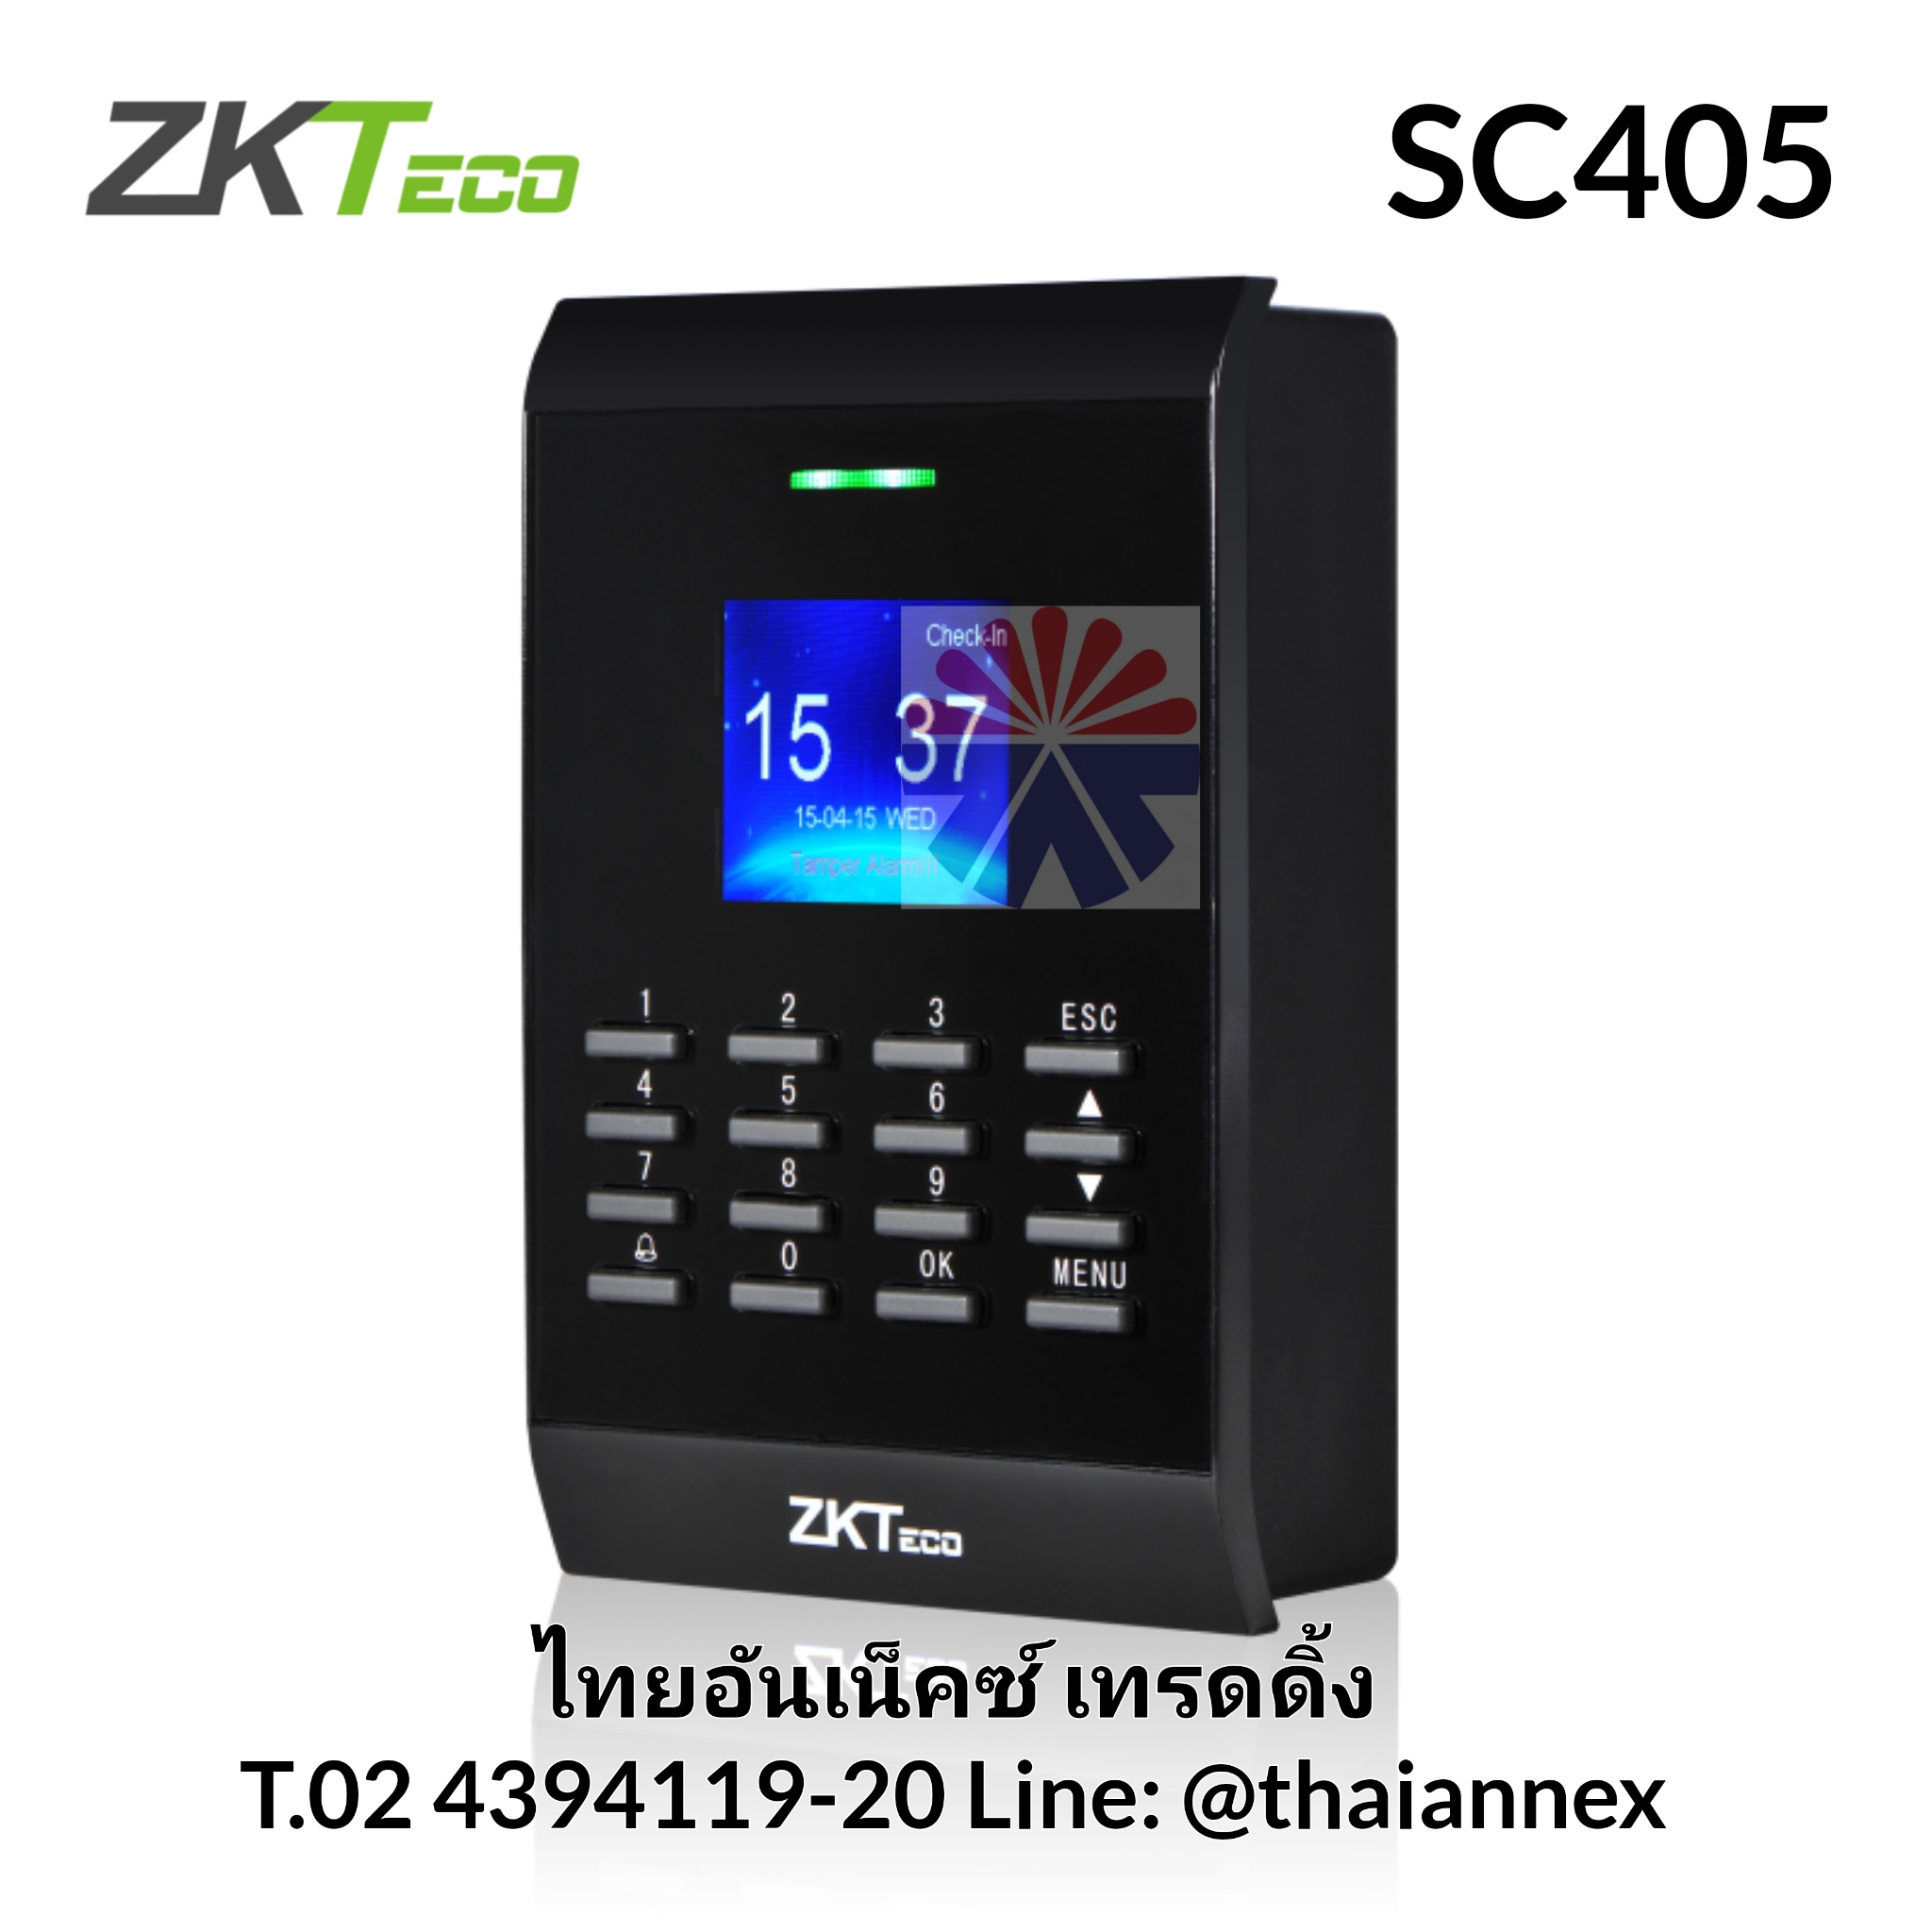 เครื่องทาบบัตร ZK SC405 (Access Control)